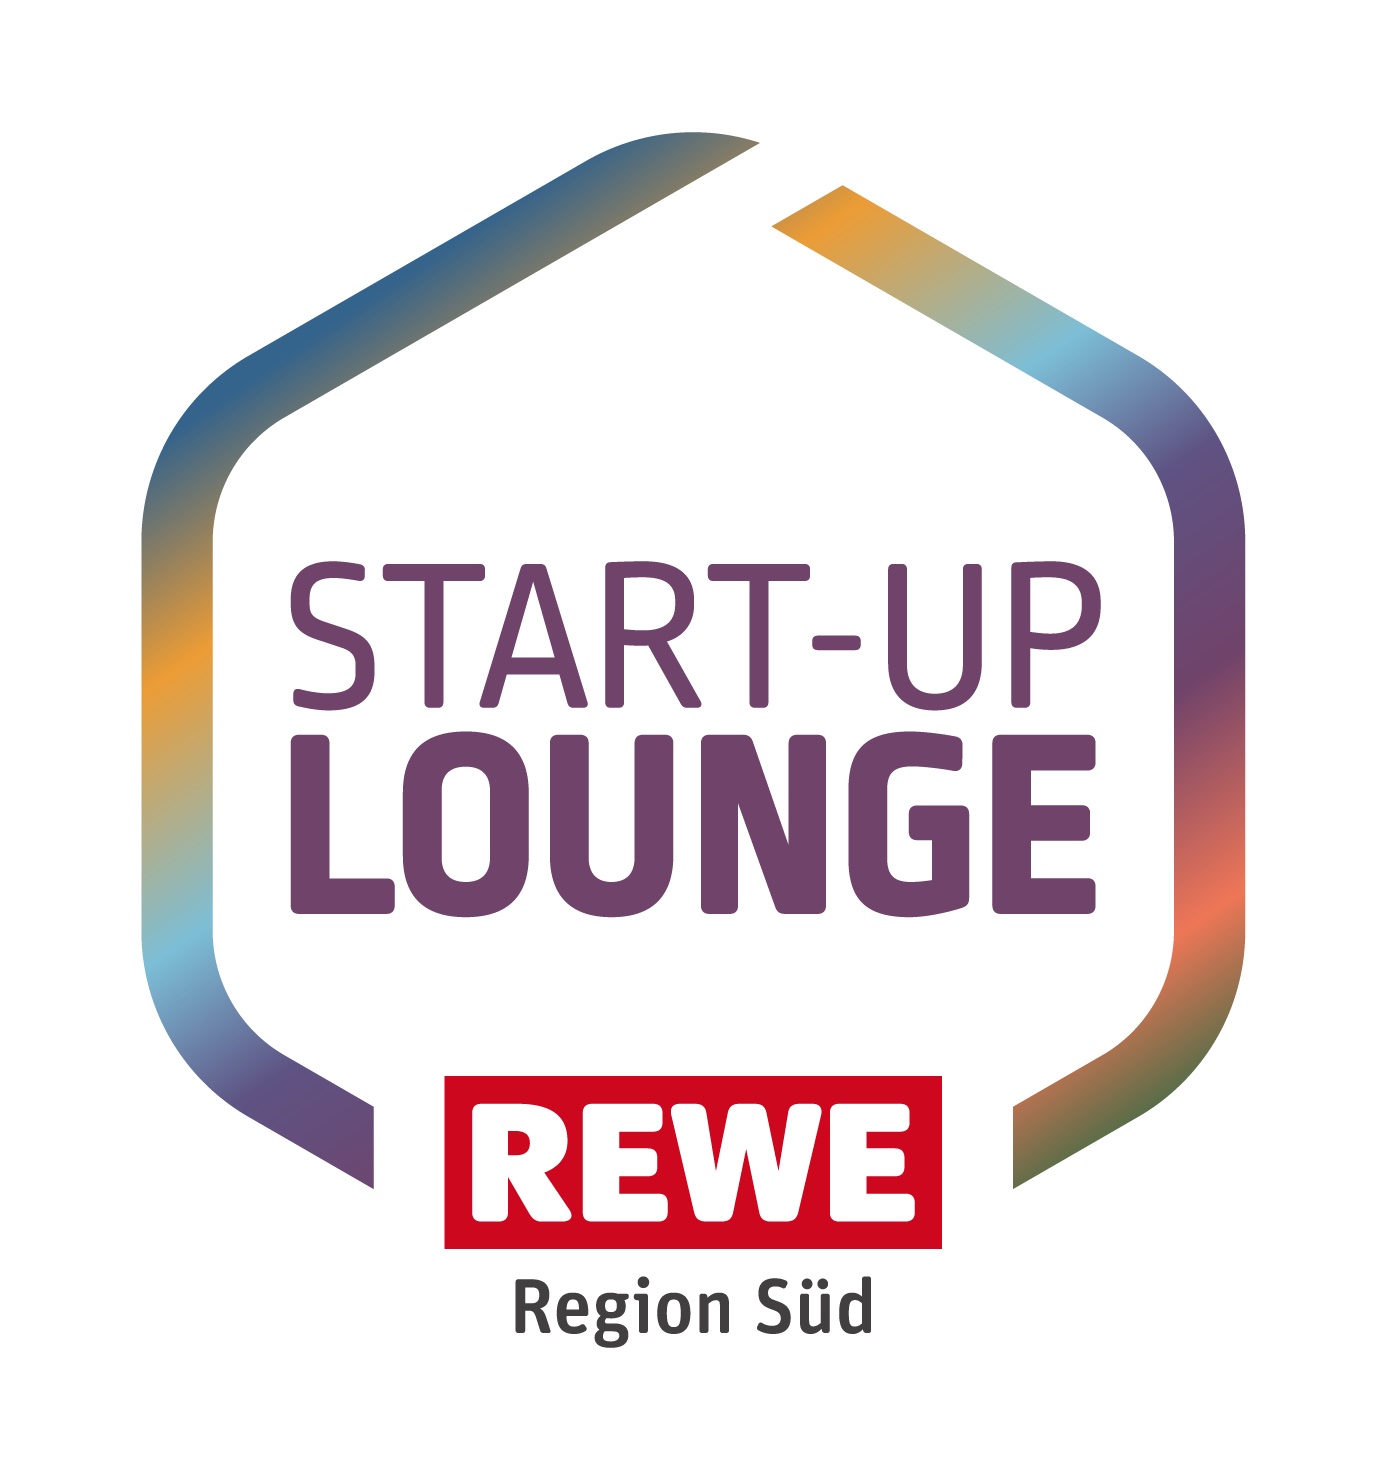 Rewe Startup Lounge